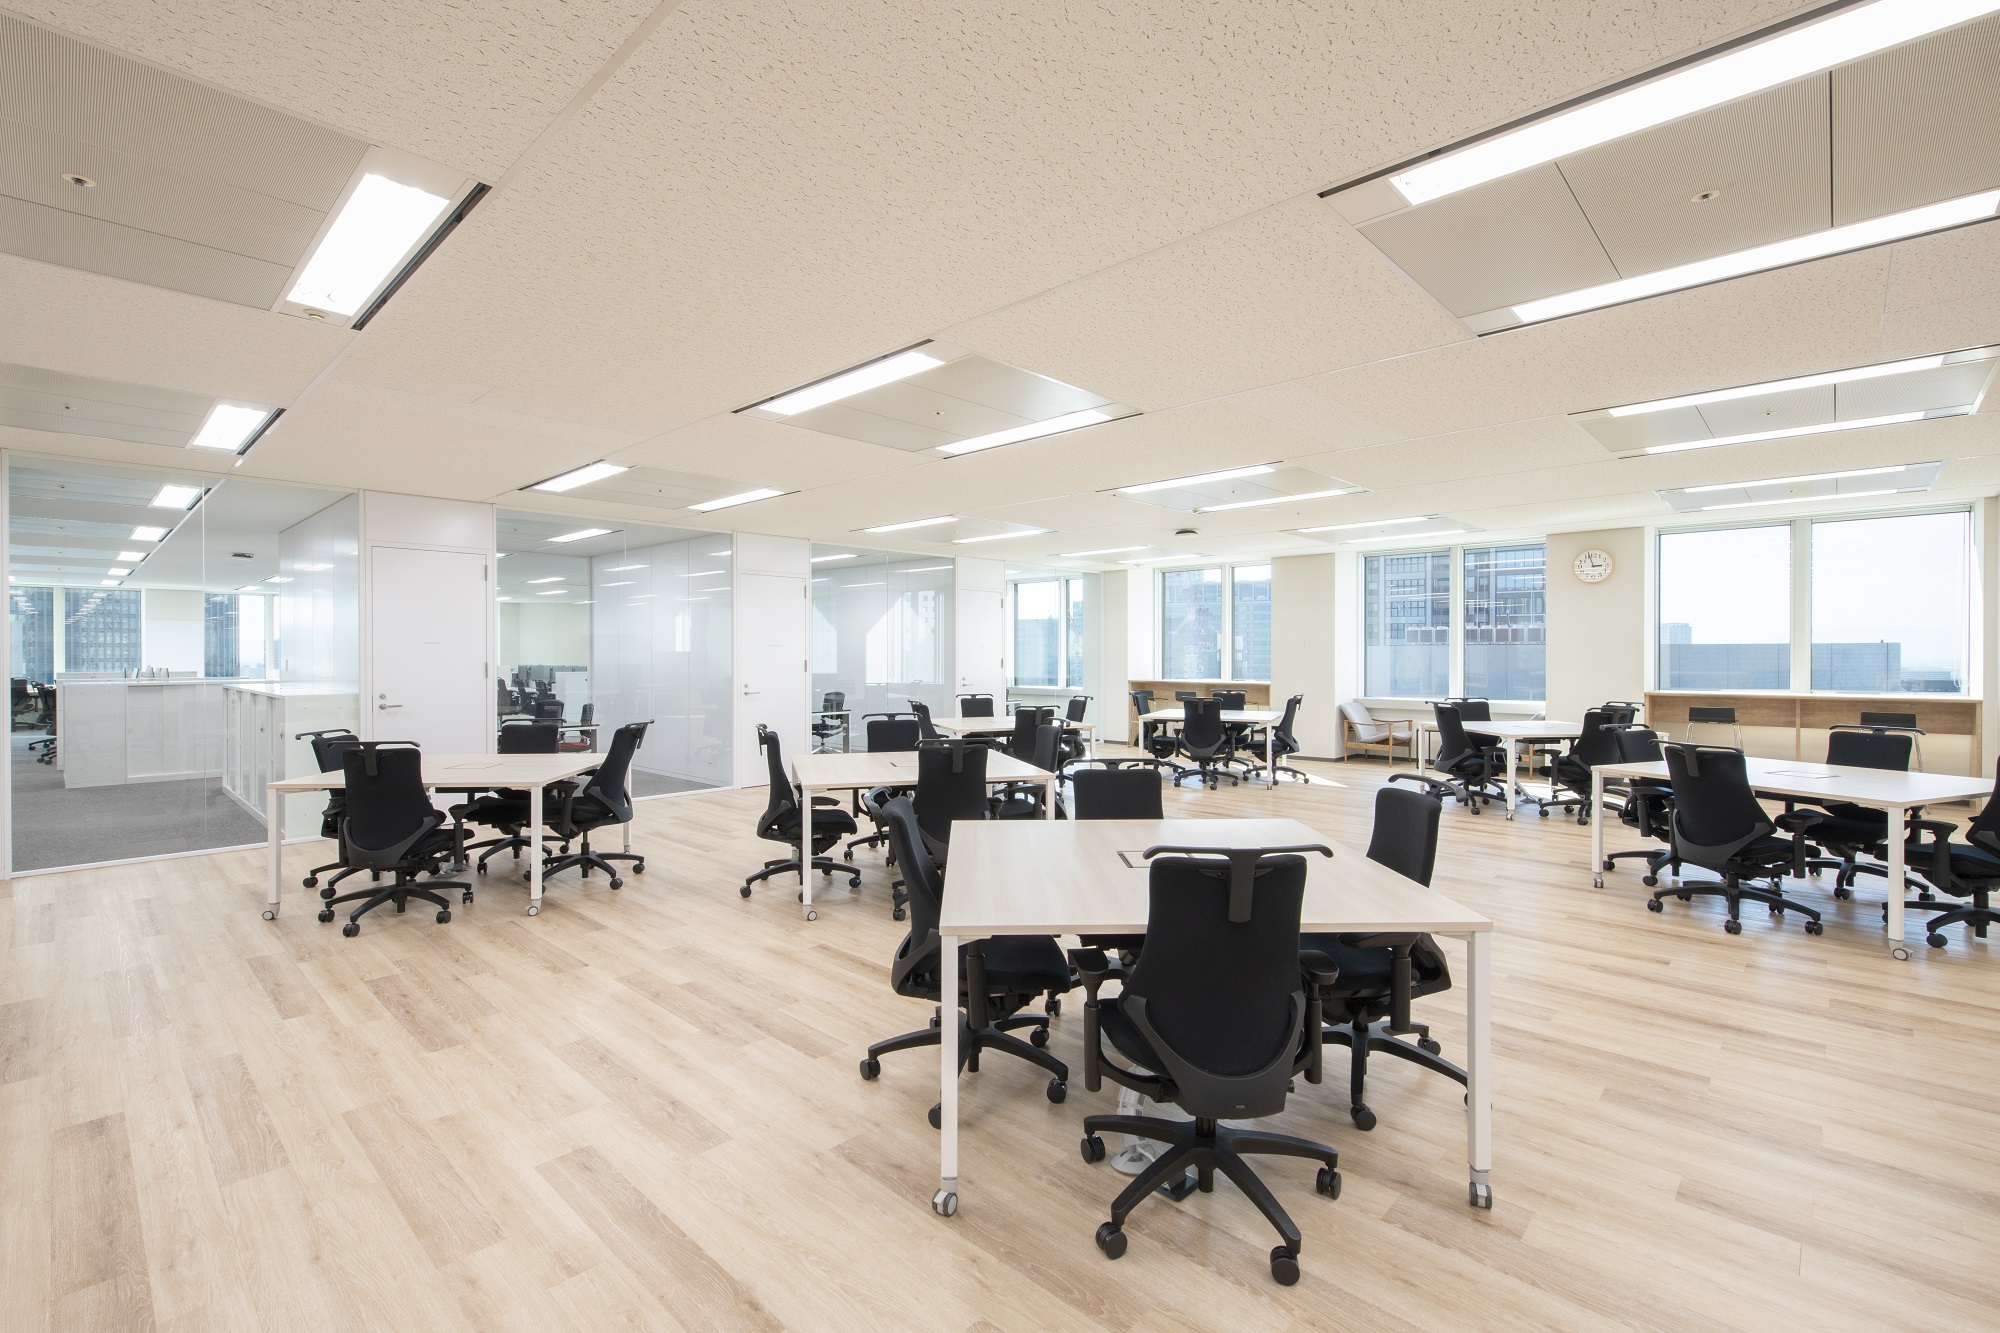 2022年3月にリニューアルした大阪オフィスのフリースペース。
明るく、開放的な雰囲気です。